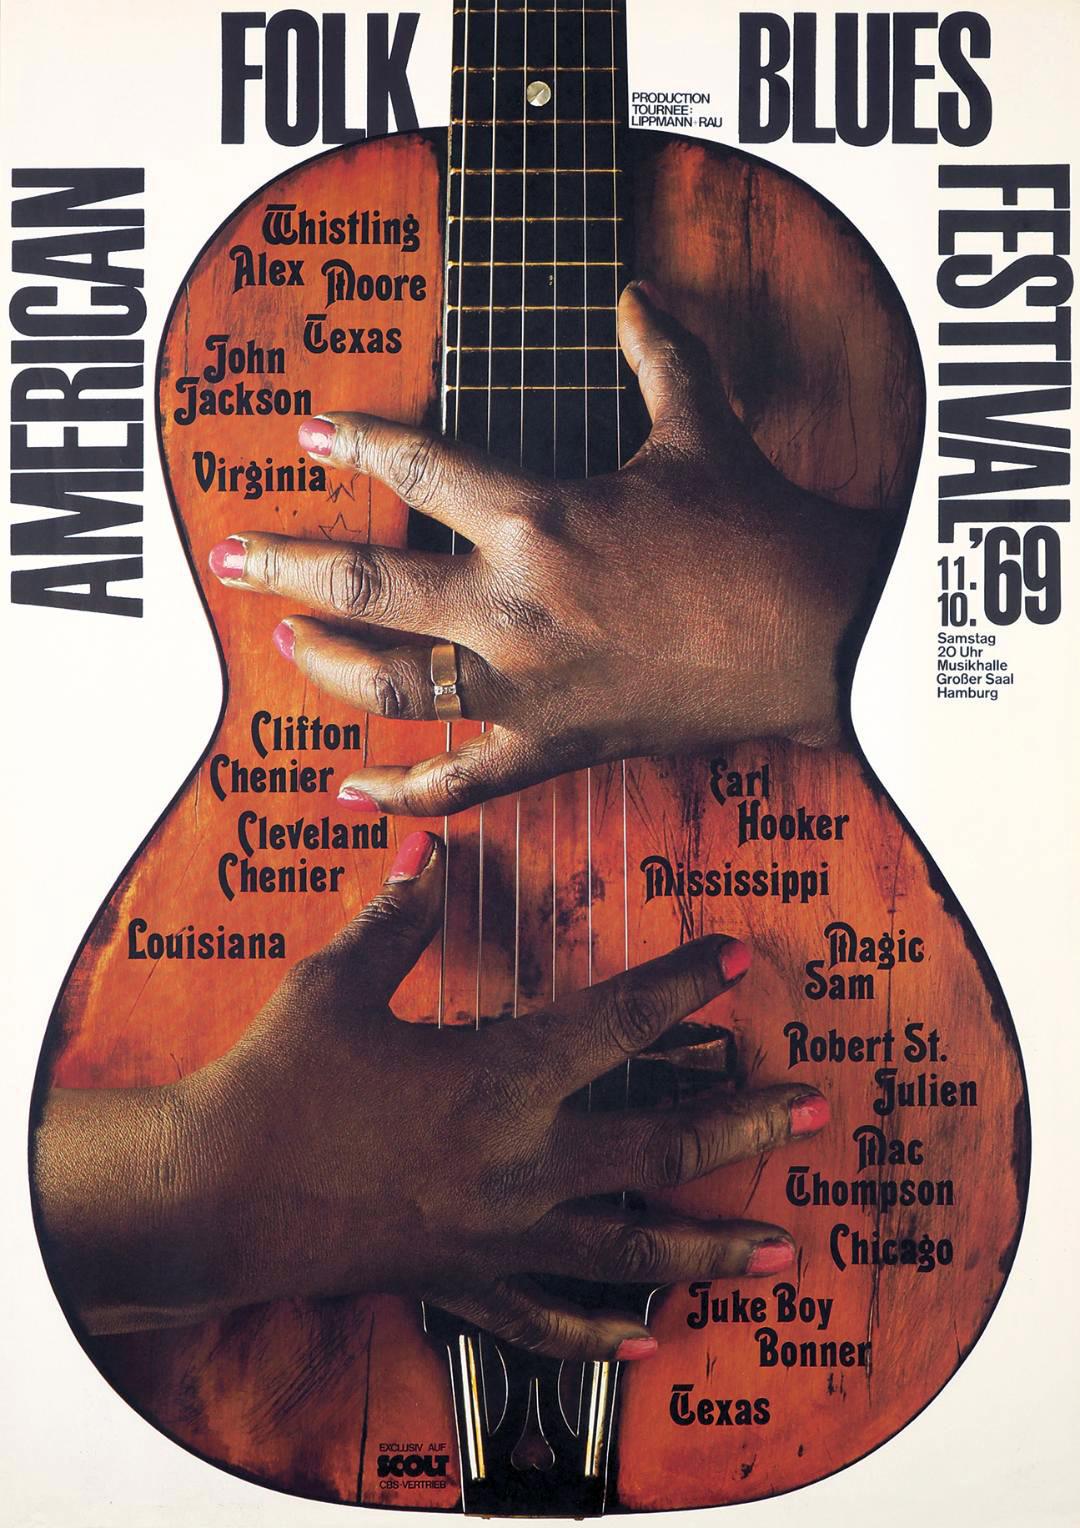 Gunther Kieser Plakat für das amerikanische Folk-Blues-Festival, 1969
Keisers Plakat für das jährlich in Hamburg stattfindende Festival des amerikanischen Folk-Blues mit dem eindrucksvollen Bild einer abgenutzten akustischen Gitarre. Hier scheint